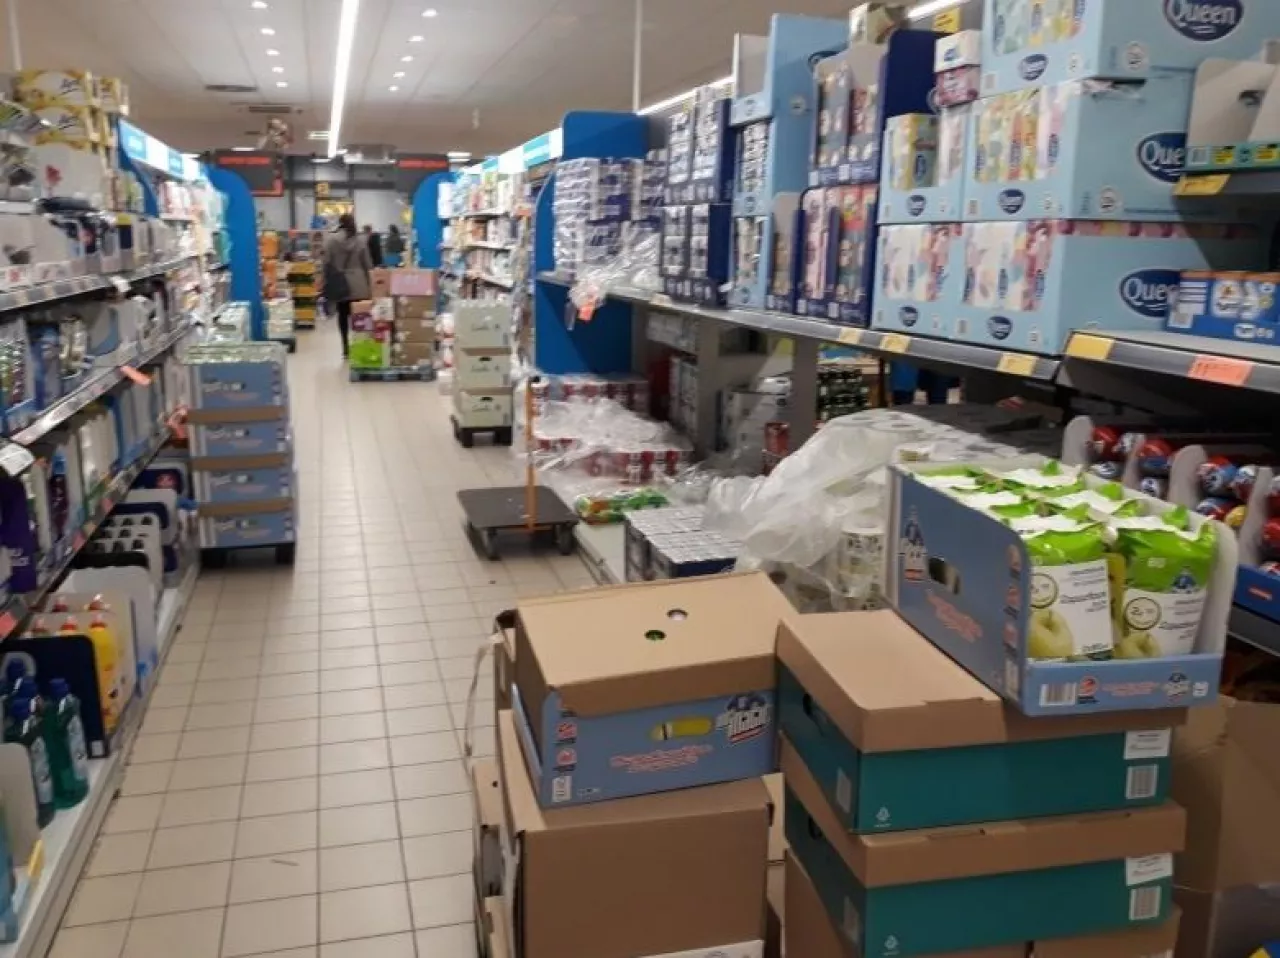 Sytuacja w sklepach spożywczych ustabilizowana: nie brakuje towarów, klienci się uspokoili (Agata Kinasiewicz)